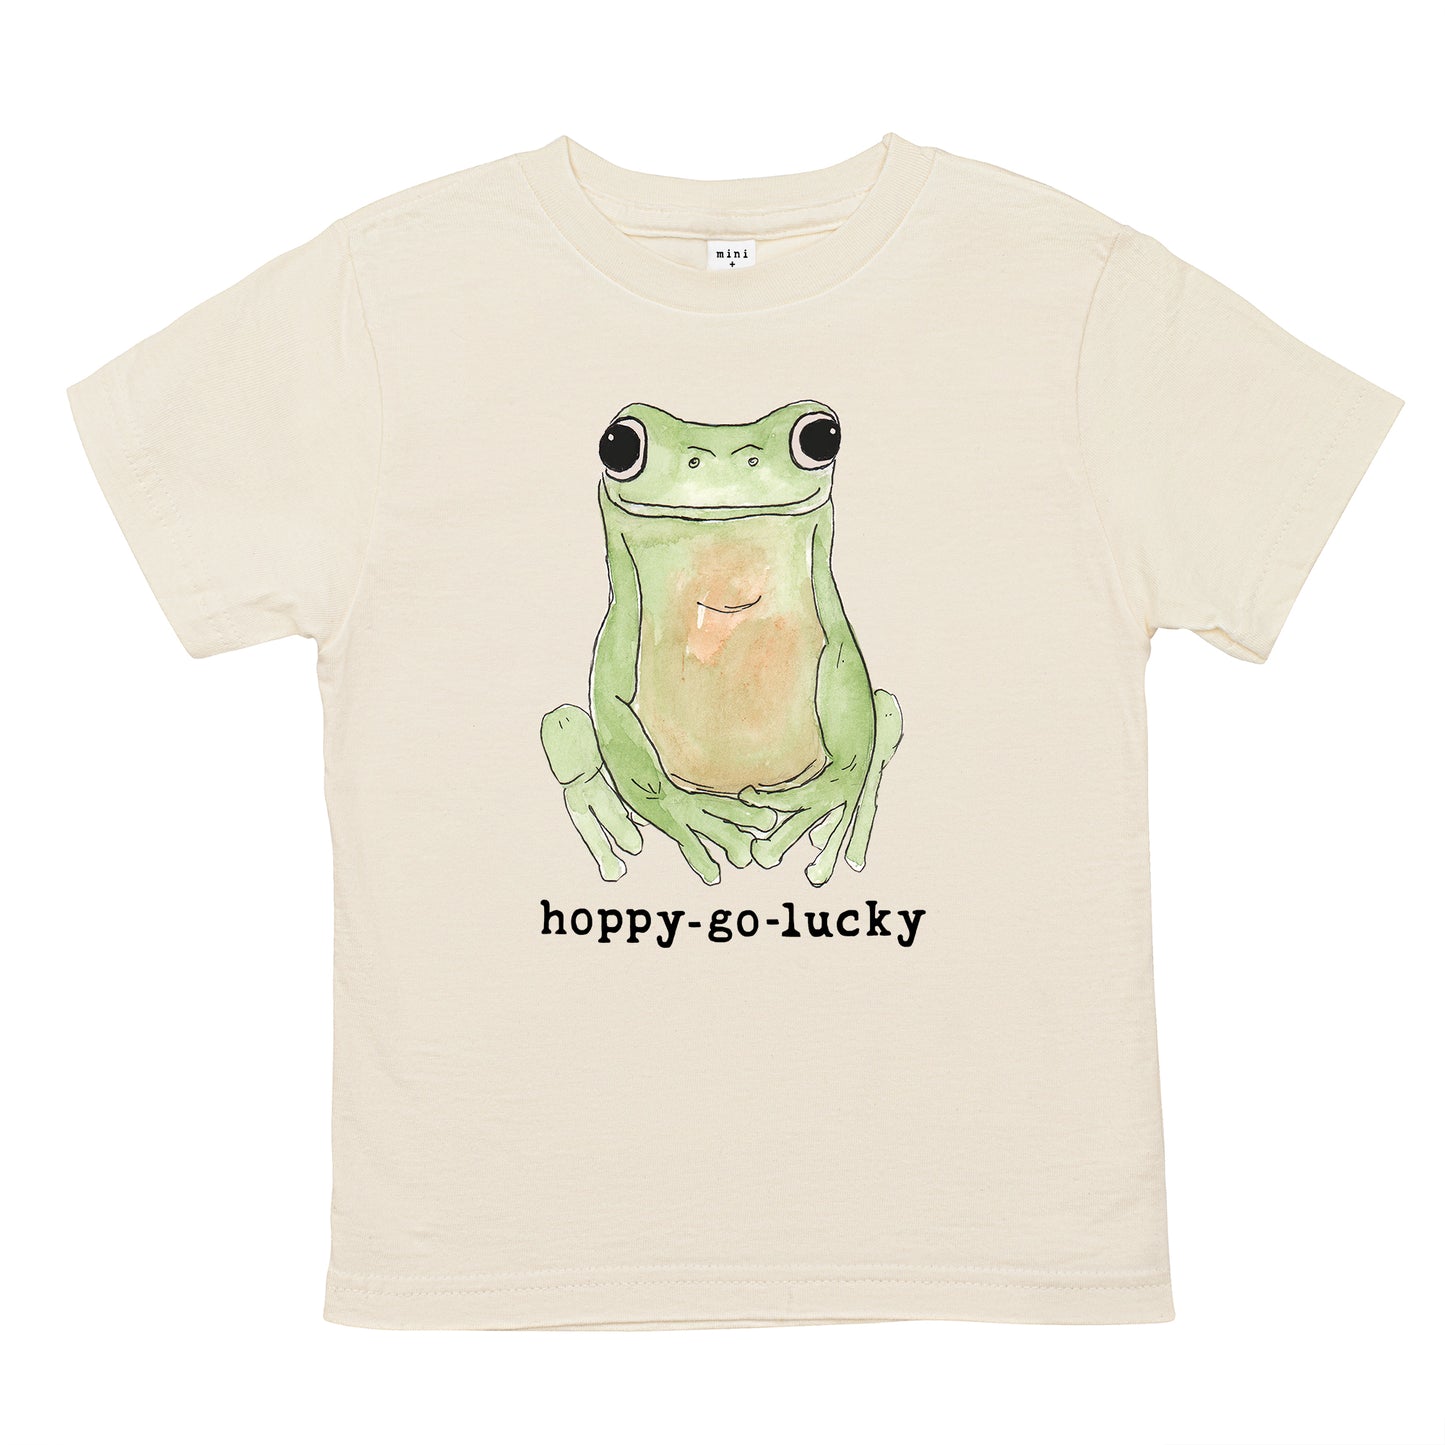 Hoppy-Go-Lucky | Organic Unbleached Tee